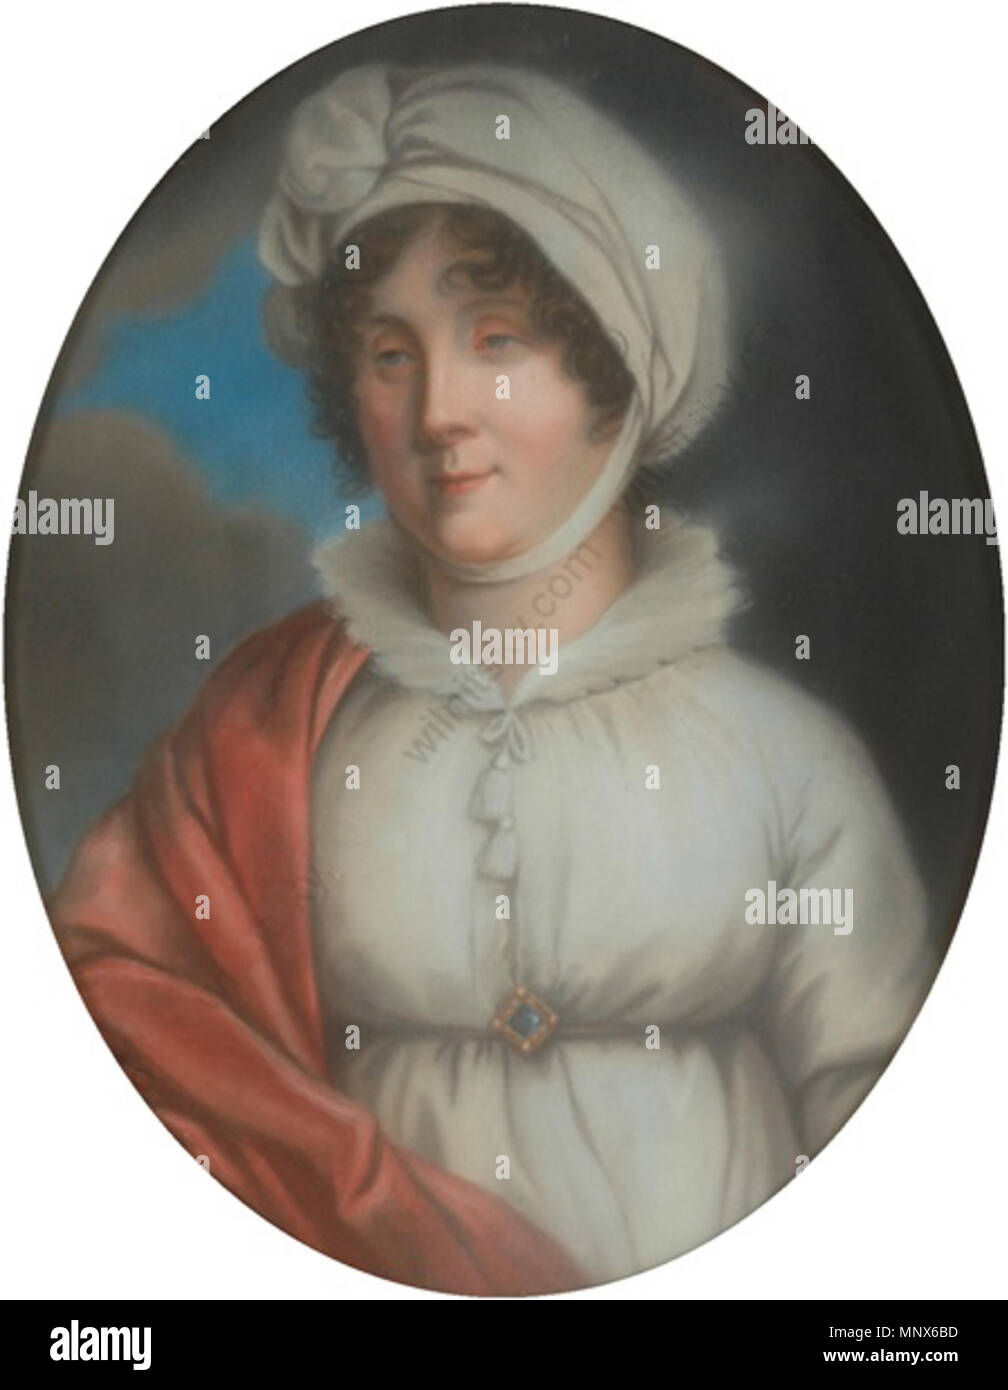 Amalie, circa 1800-1805 Markgravine de Baden. 1106 Schwartz - Amalie, Markgravine de Baden, pastel Banque D'Images